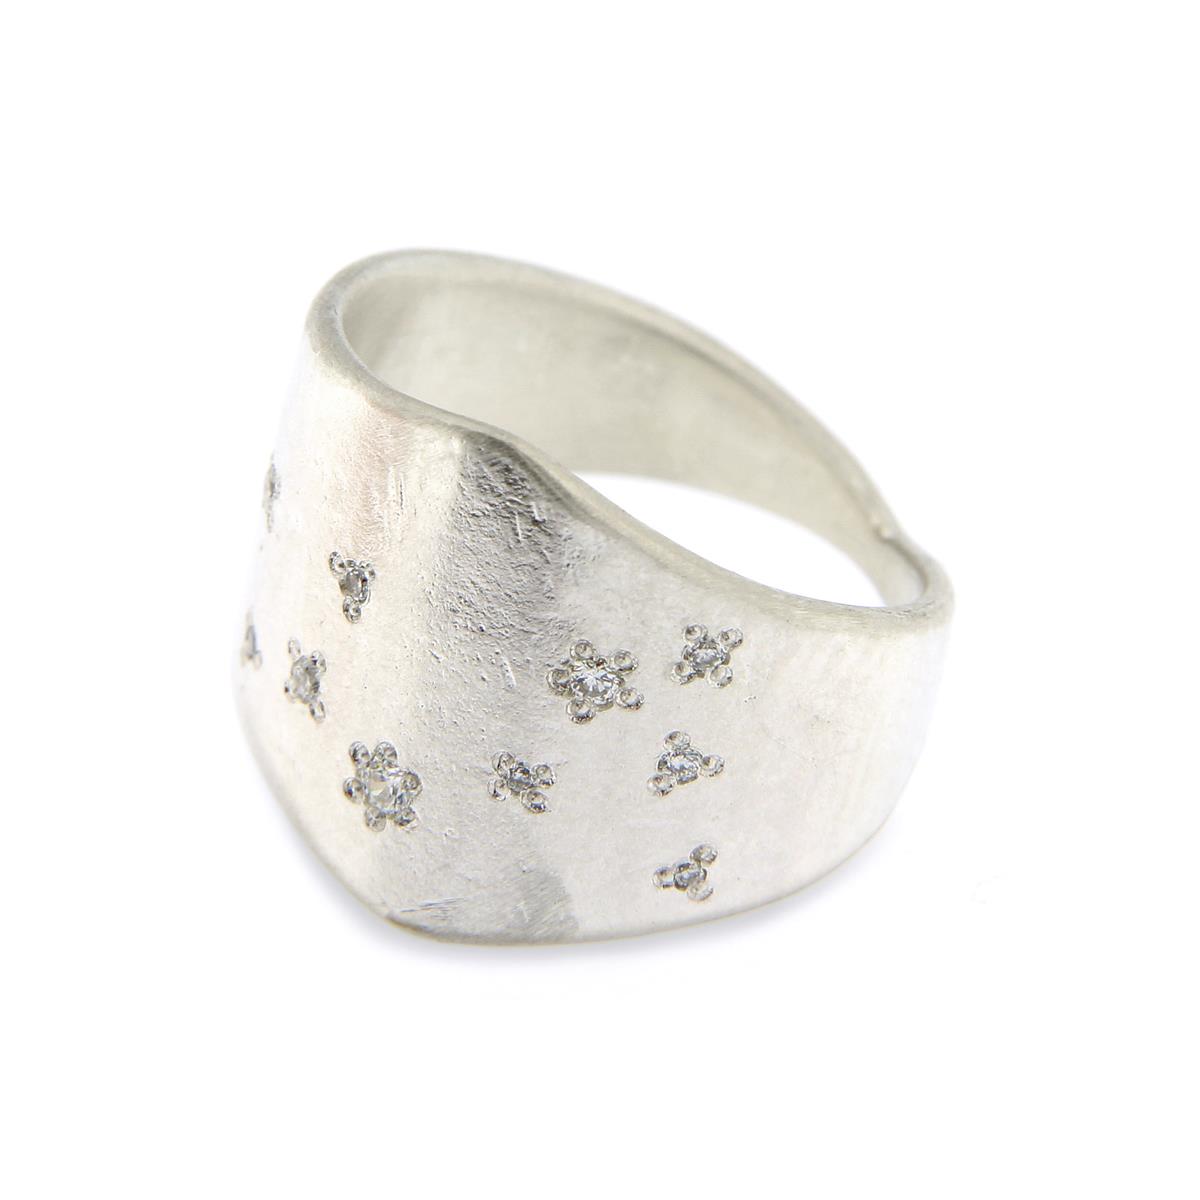 Katie g. Jewellery - Shield Ring - mattiertes sterling silber - mit brillanten im stargazing stil - Ring 150€ und pro Brillant 70€ - Anzahl und Position der Steine kann vom Kunden bestimmt werden